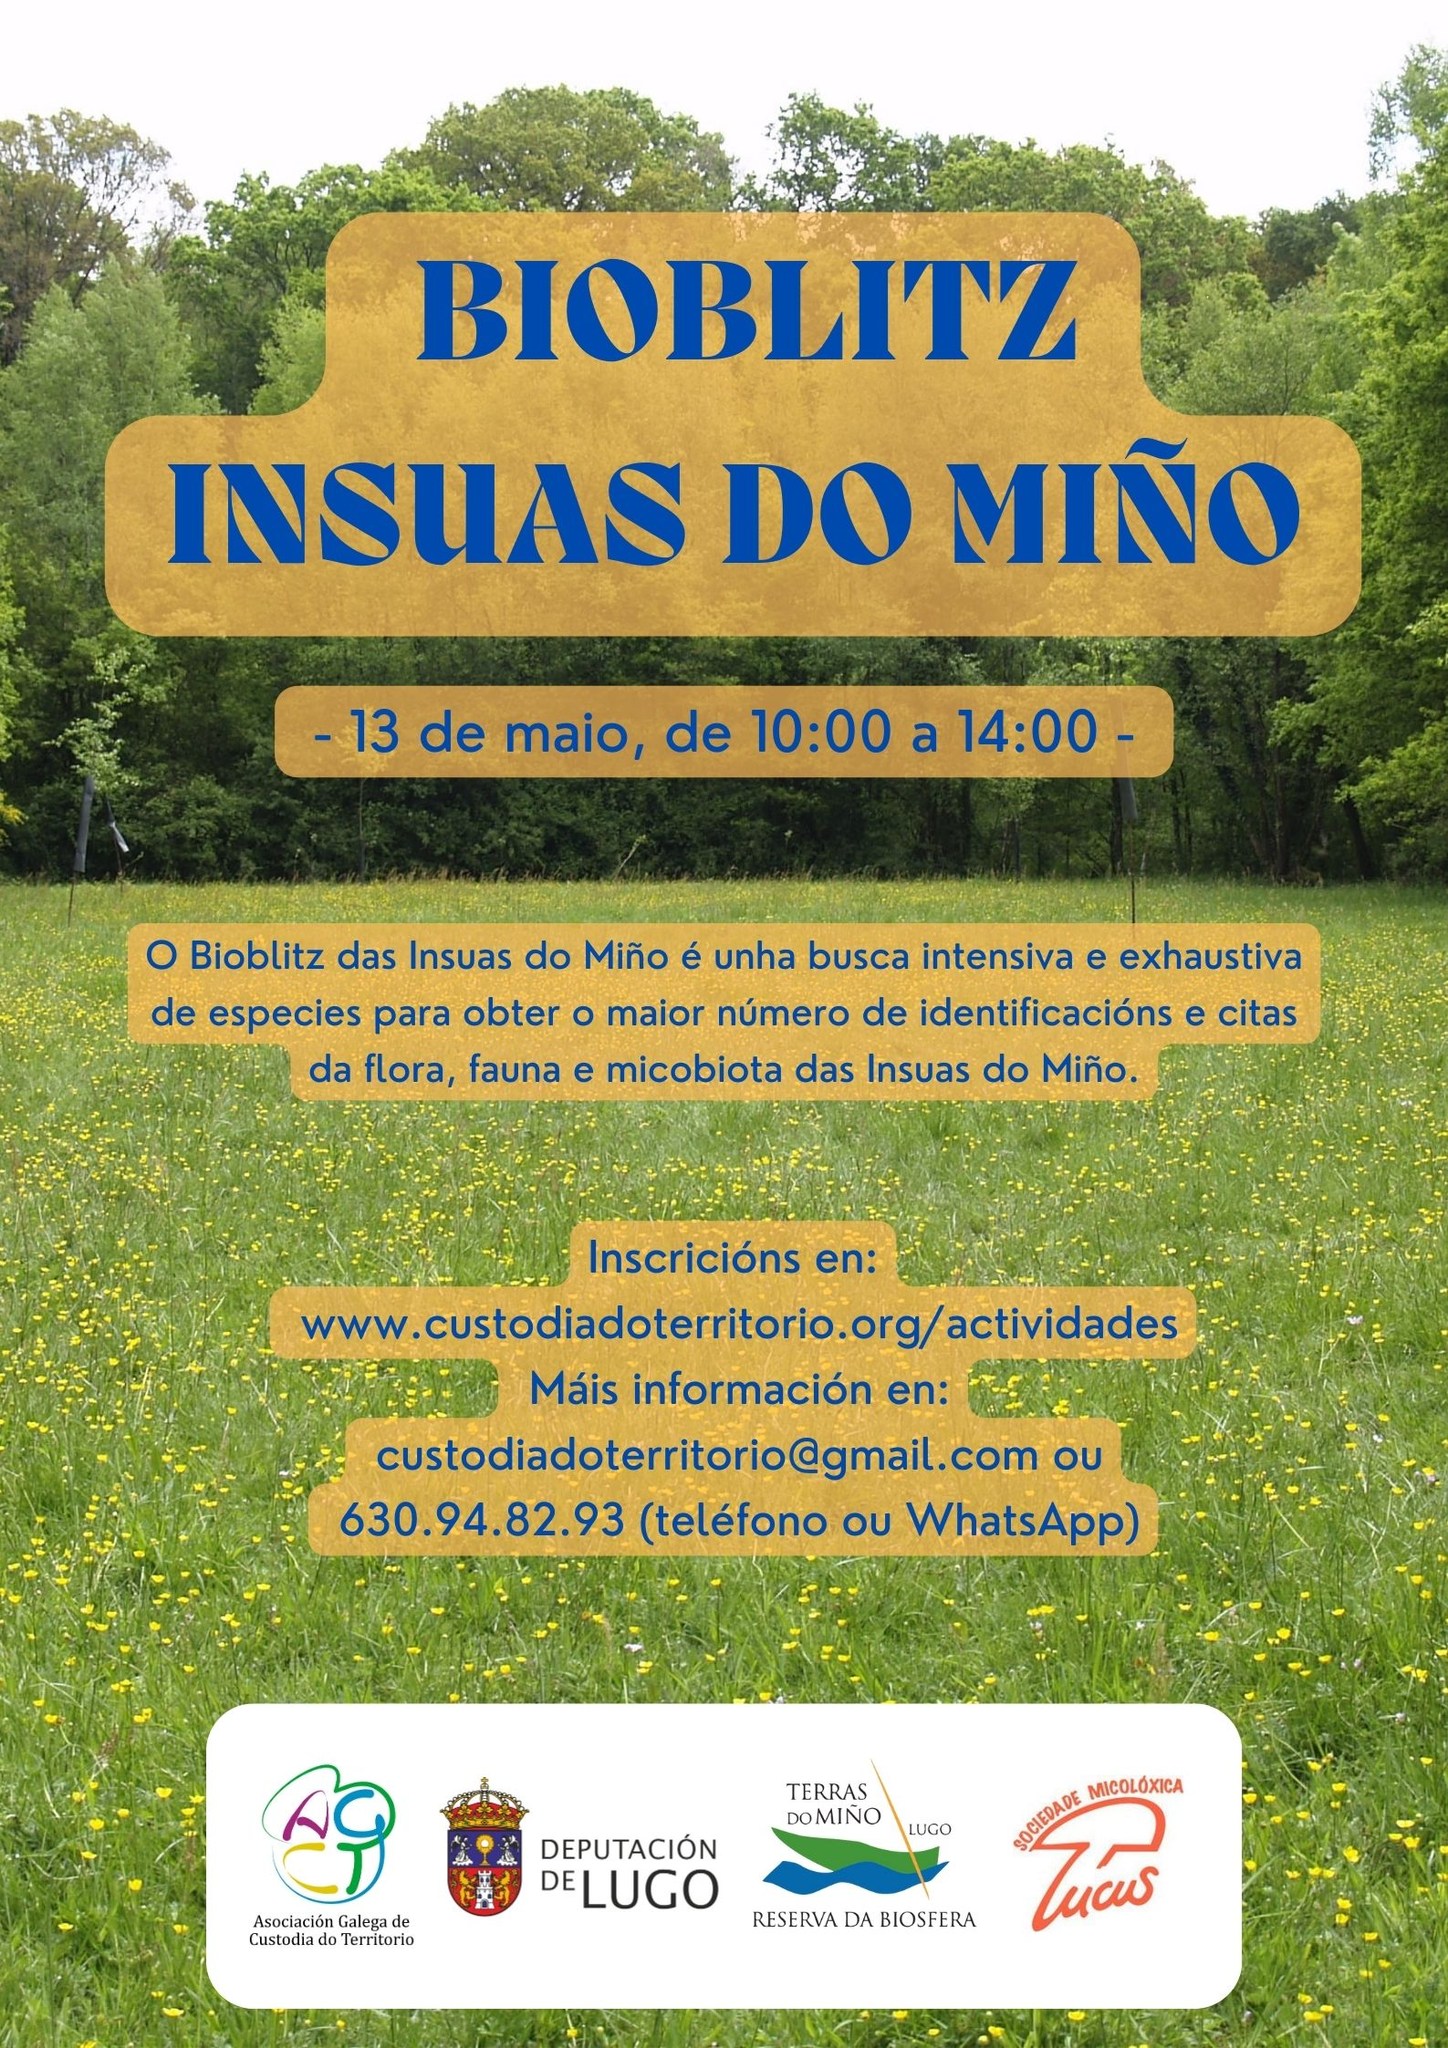 BioBlitz (BioLóstrego) nas Insuas do Miño